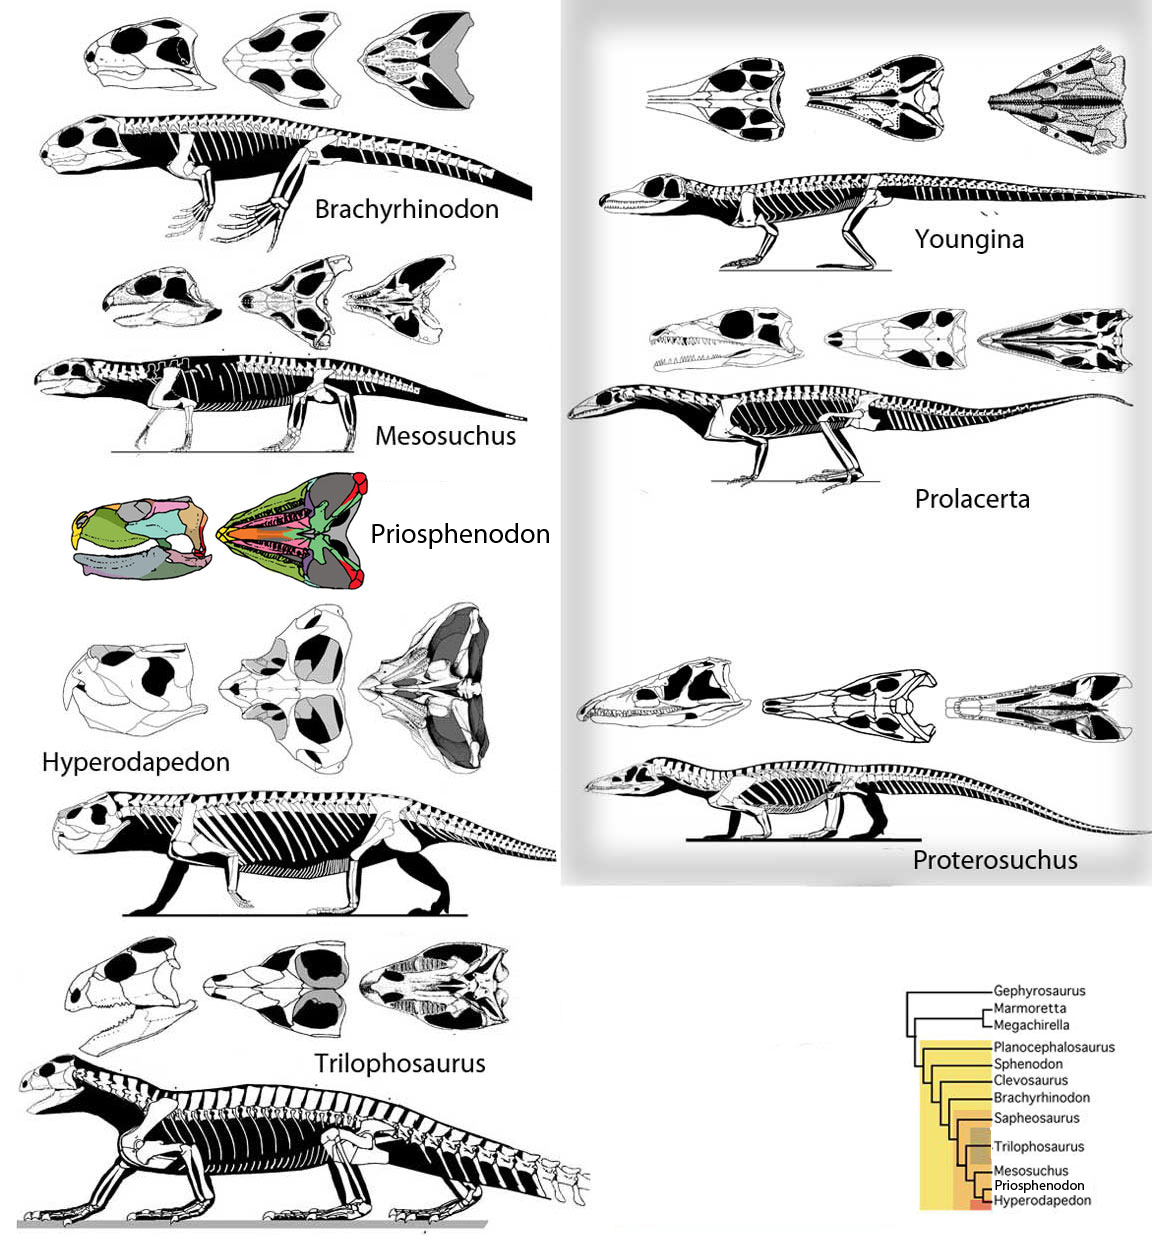 Rhynchosaurs compared